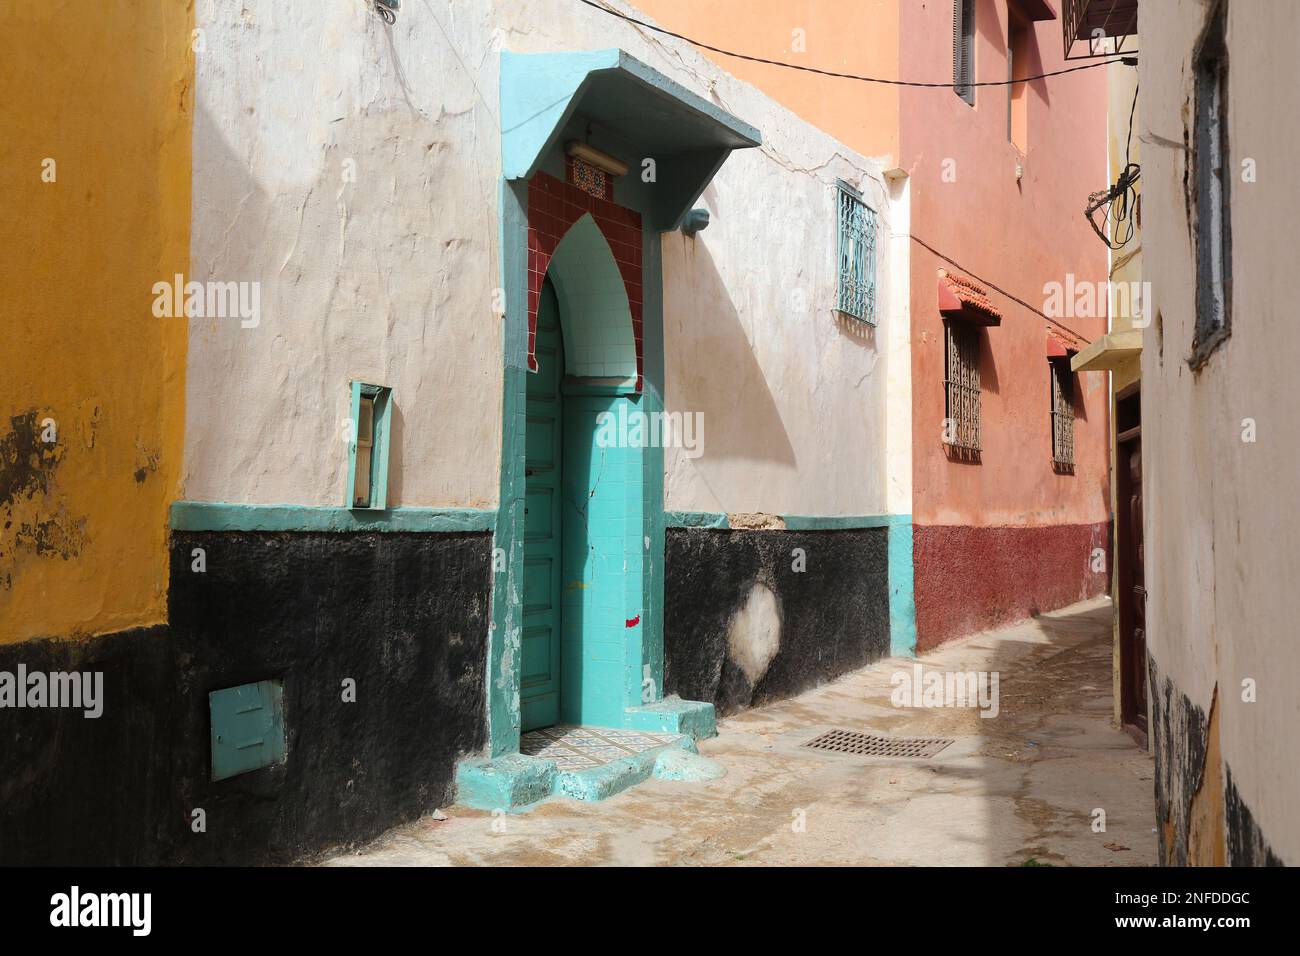 El Jadida città strada in Marocco. Punto di riferimento marocchino - ex cittadina della colonia portoghese, dichiarata patrimonio dell'umanità dall'UNESCO. Foto Stock